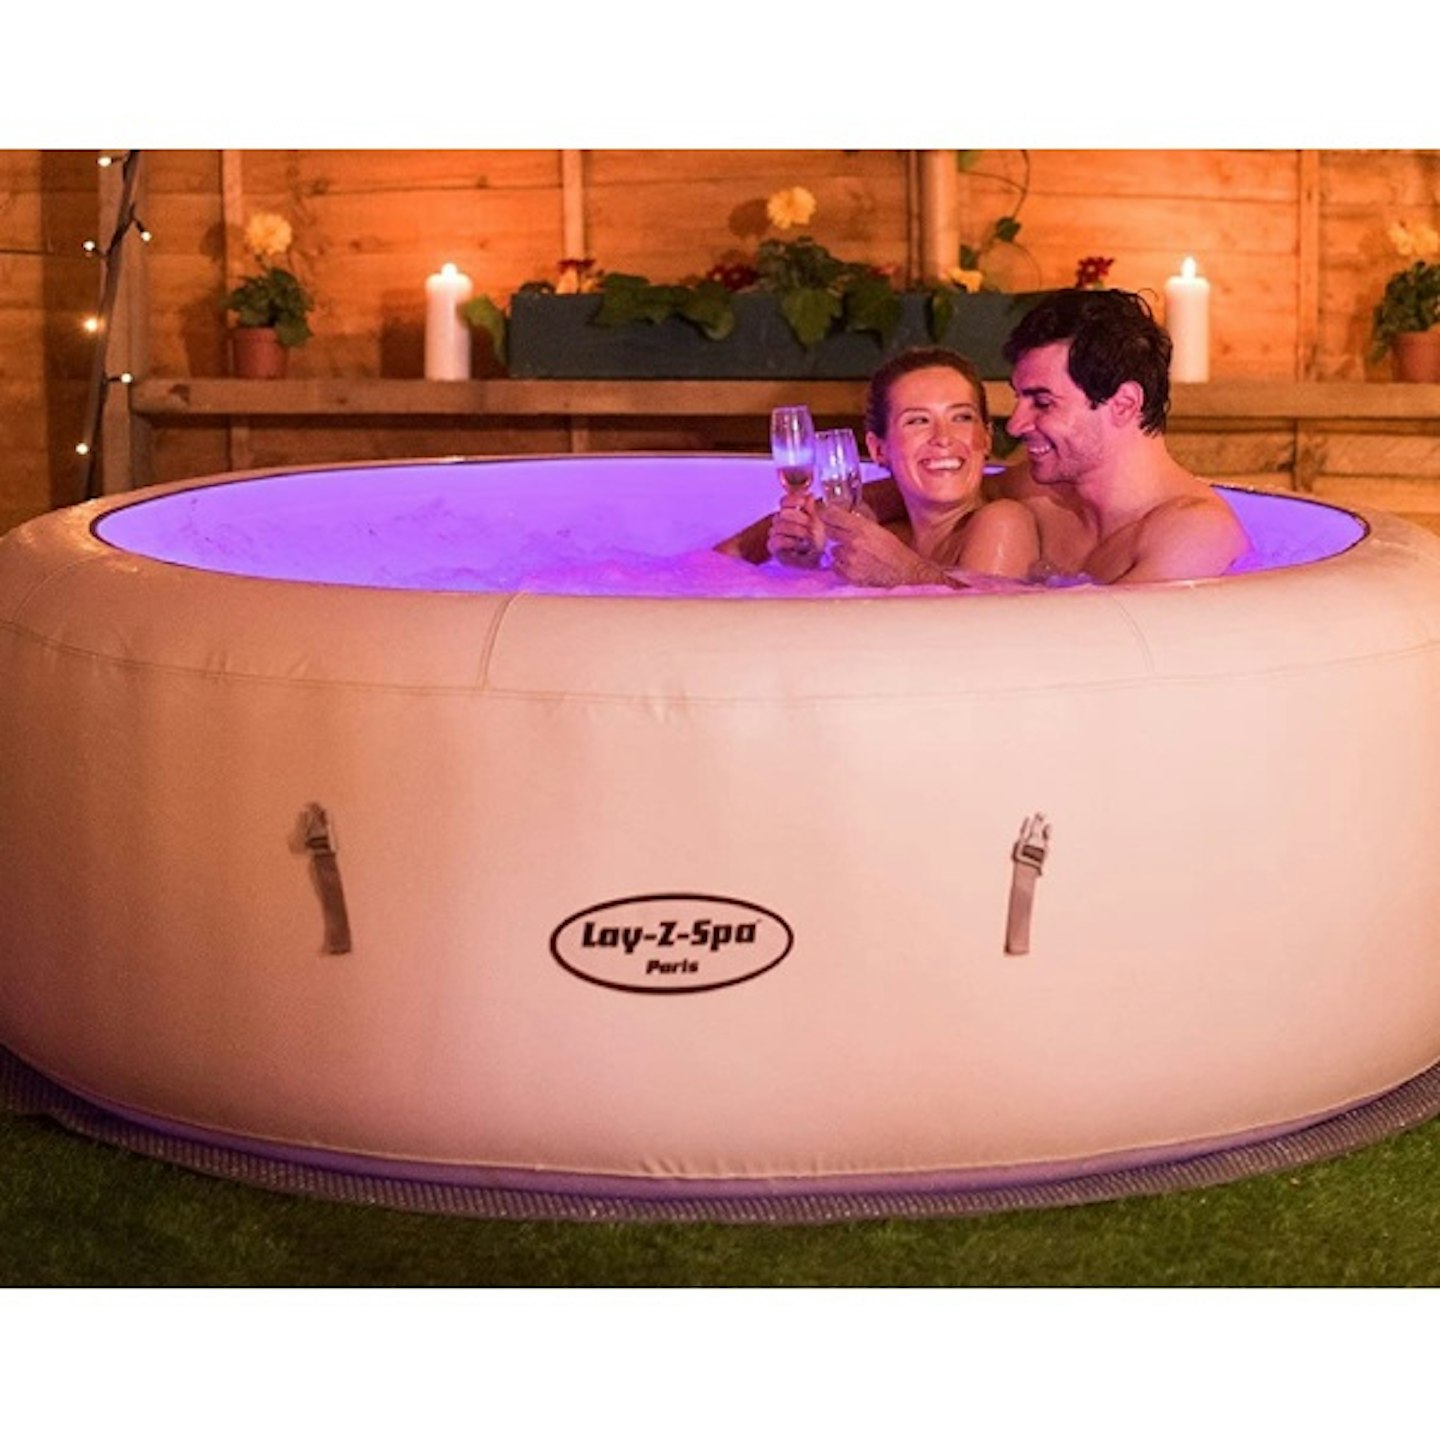 Lay-Z-Spa Paris Hot Tub